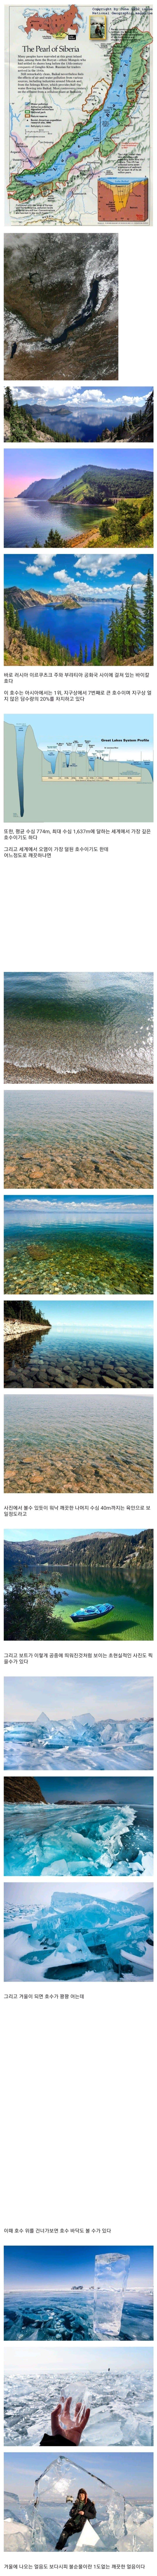 세상에서 가장 깨끗하다는 호수